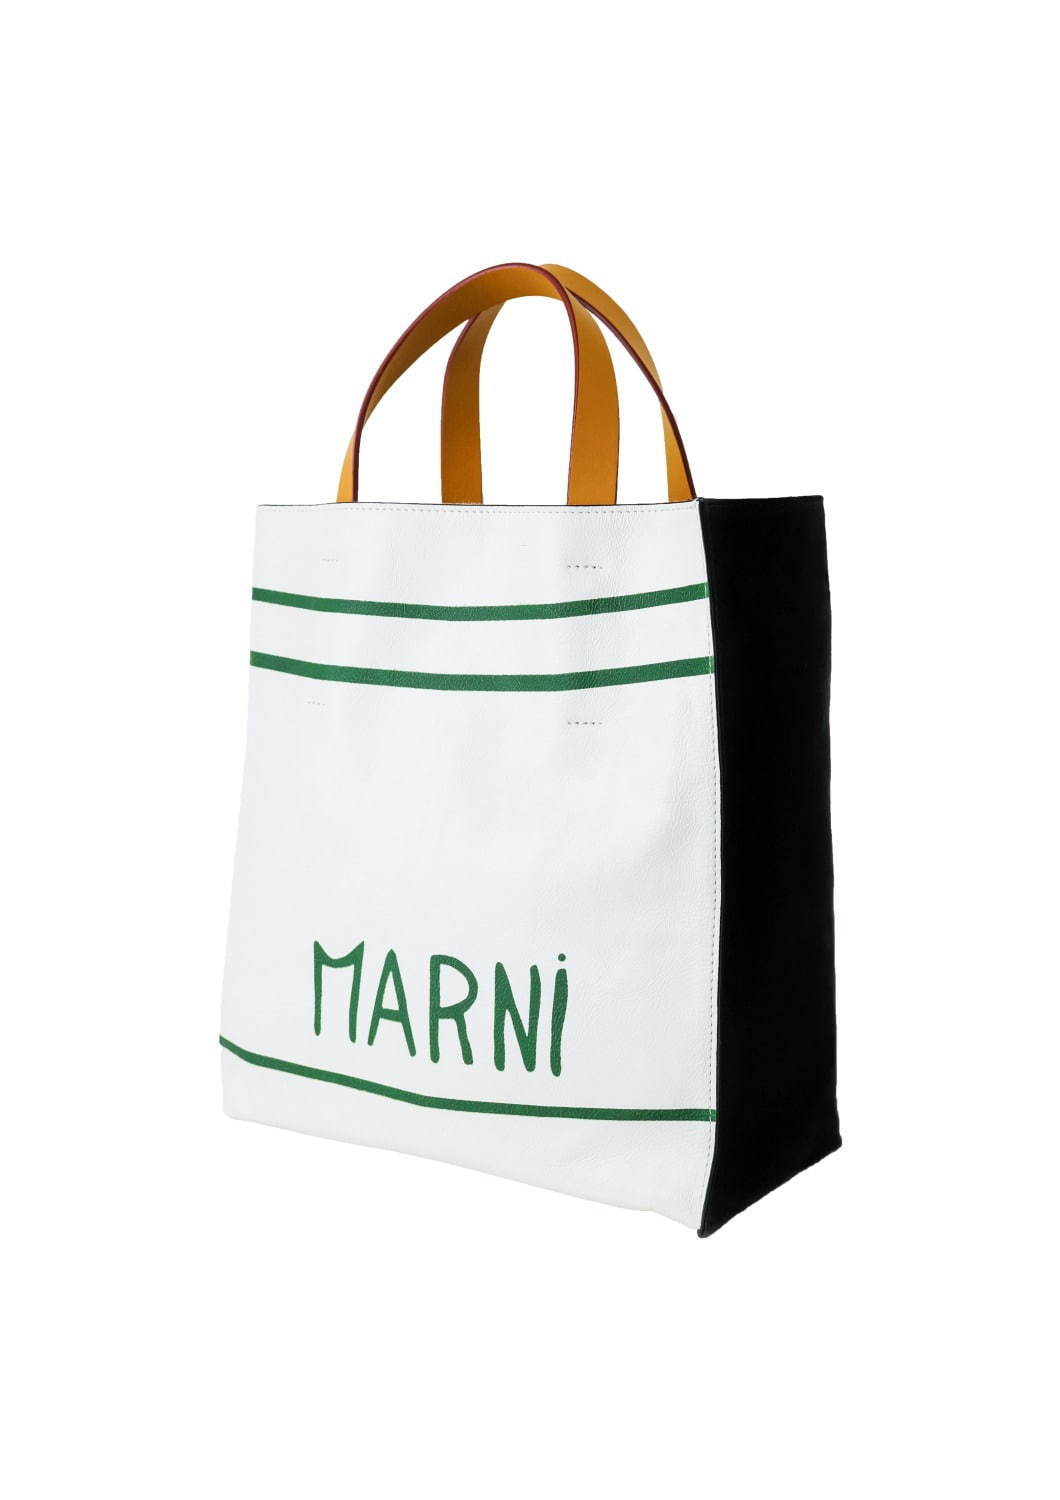 マルニから 手描き風ロゴ の2wayトートバッグ Museo メンズtシャツ ファッションプレス